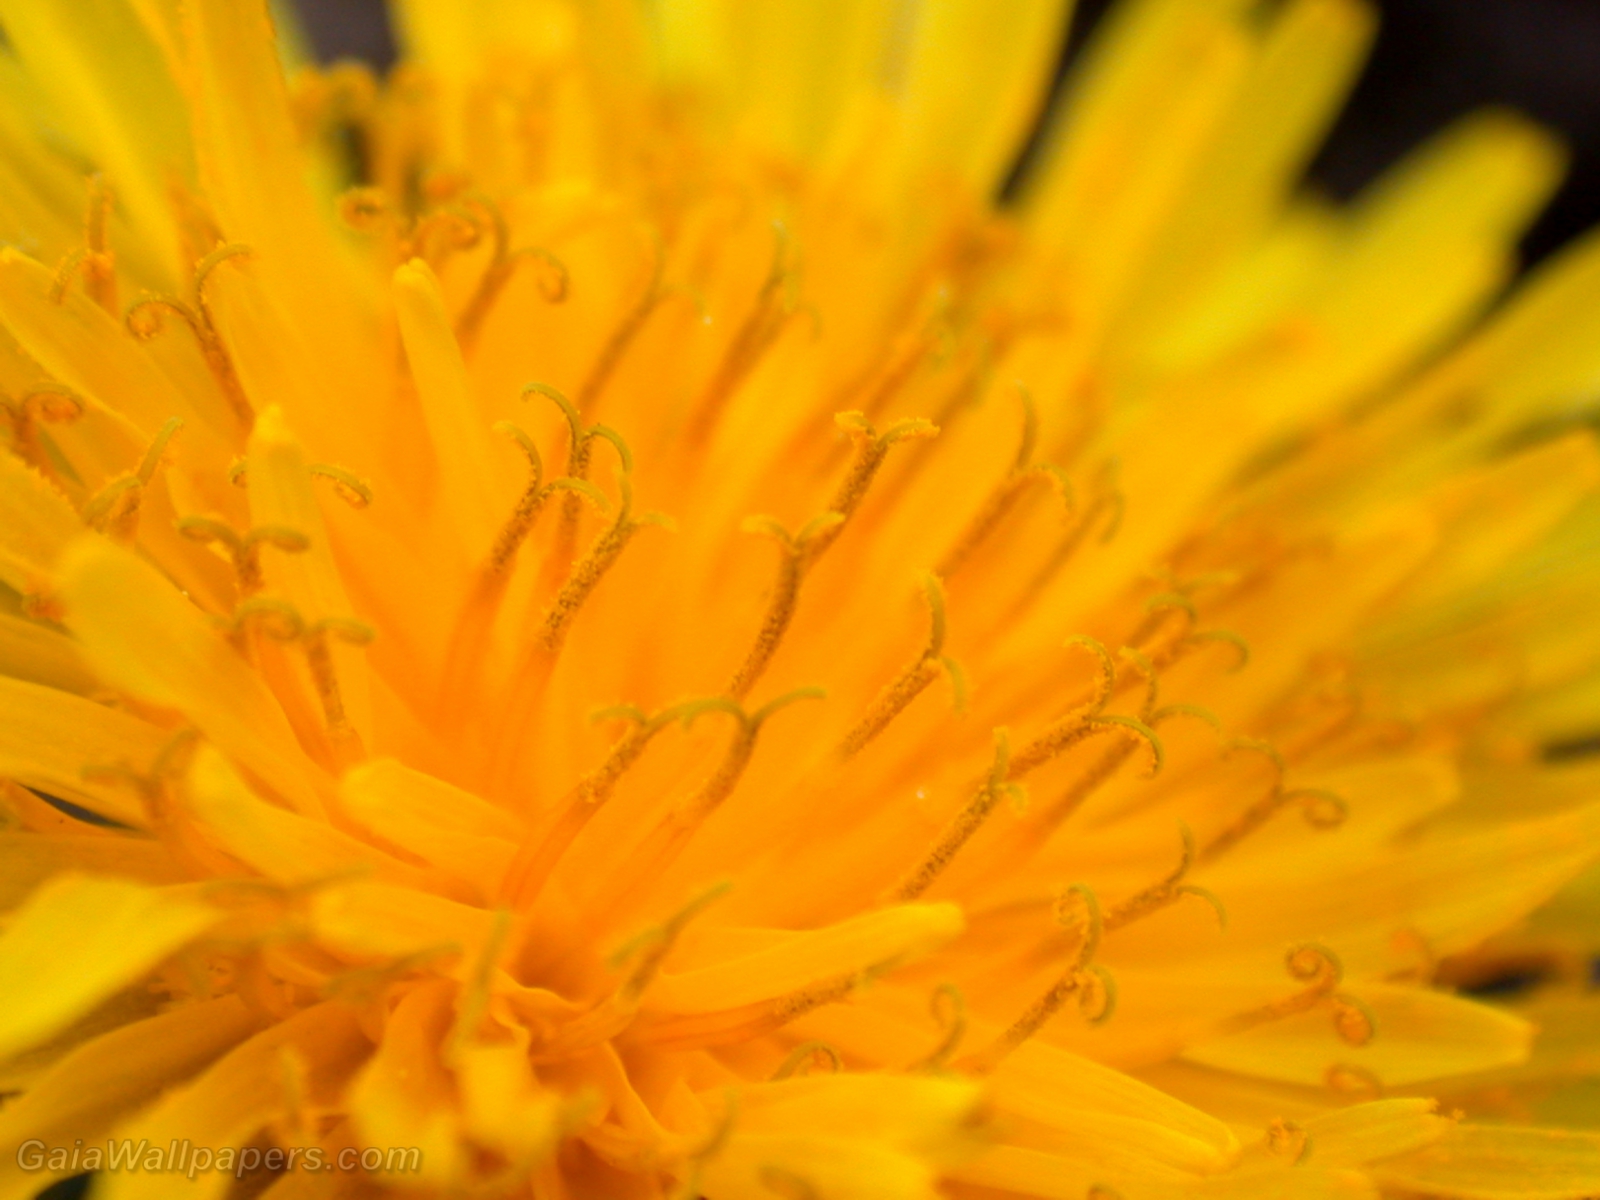 Pollen dans un pissenlit - Fonds d'écran gratuits